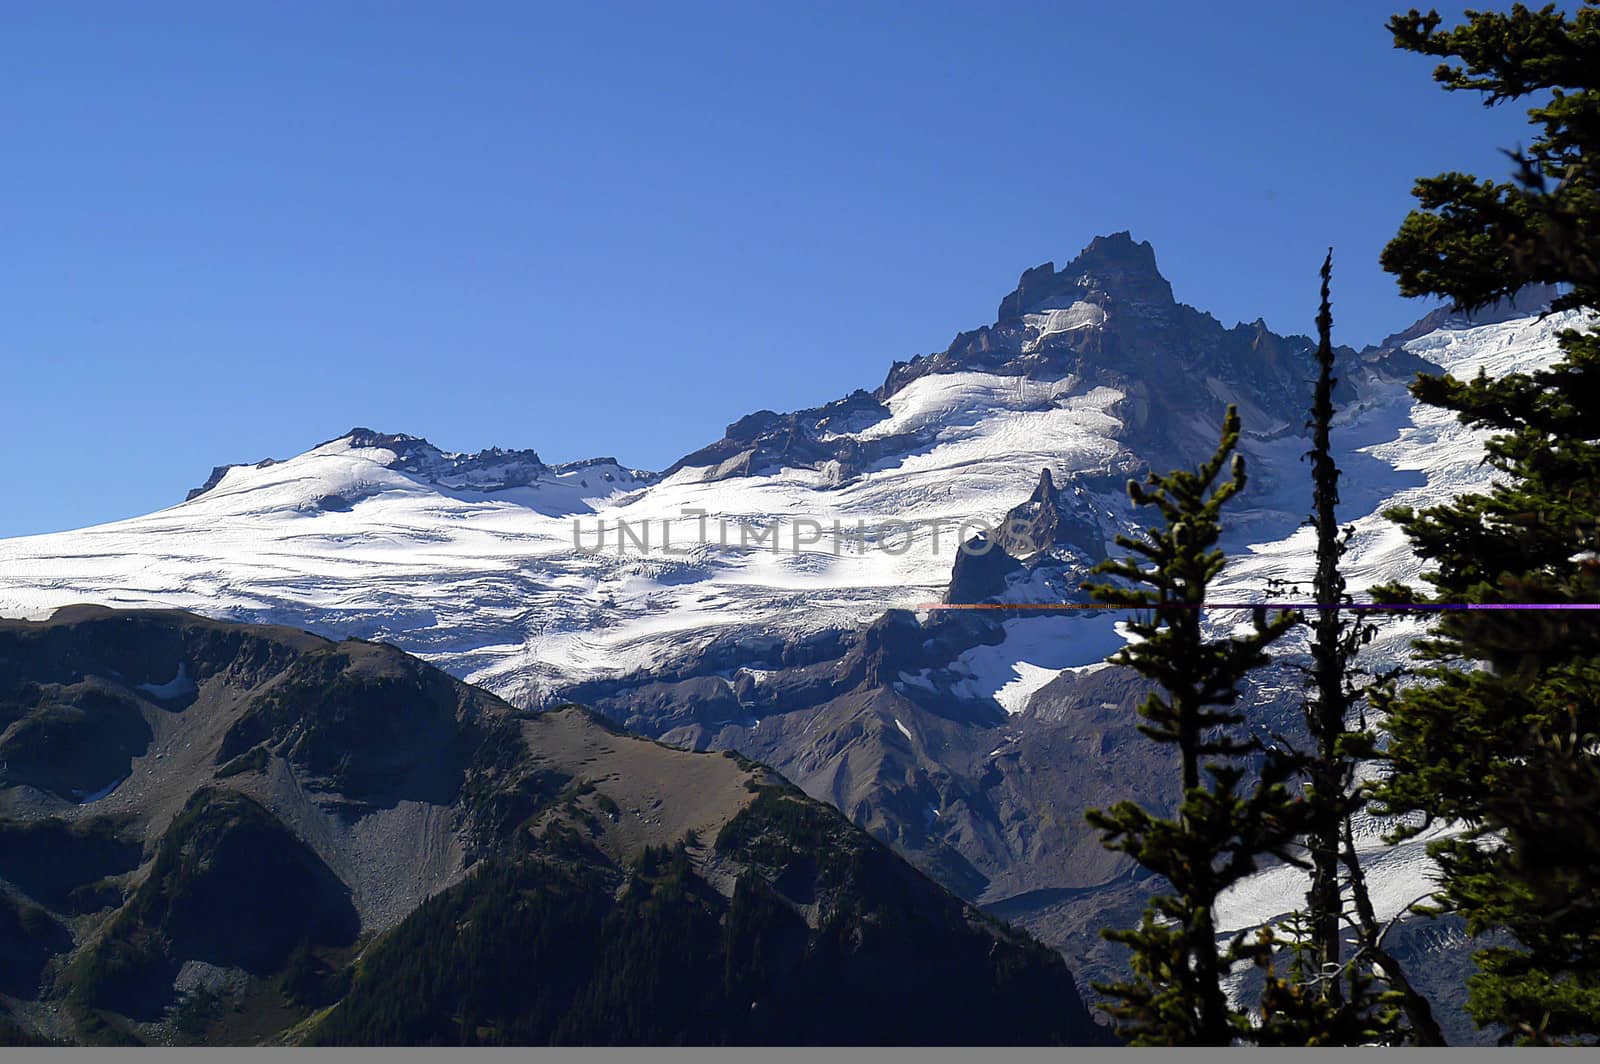 Mt Rainier under clear blue sky by cestes001